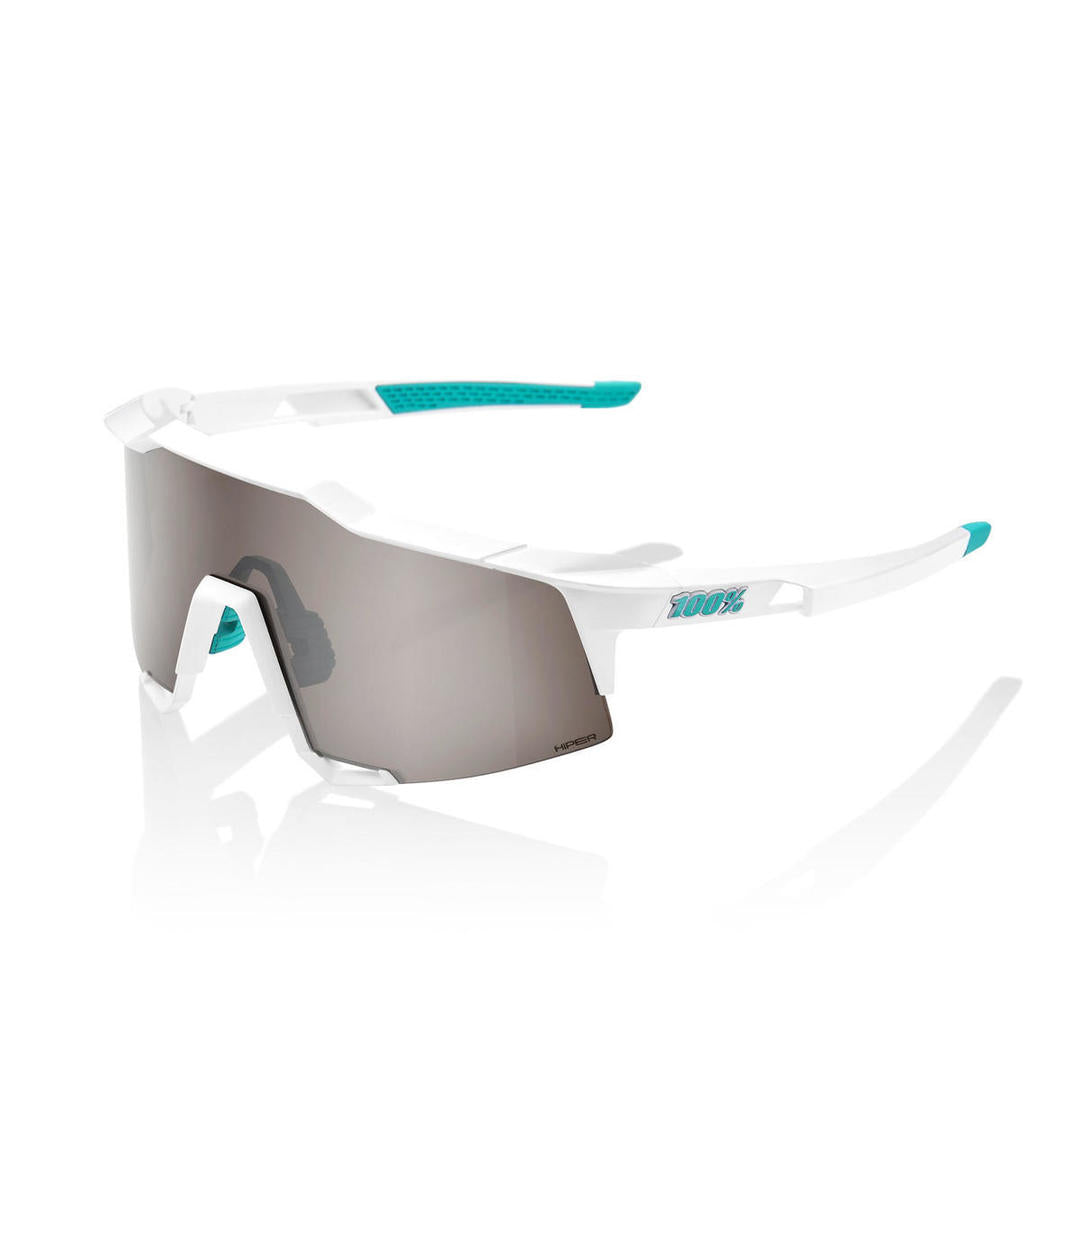 RIDE 100% Eyewear Speedcraft  BORA Hans Grohe Team - White HiPER